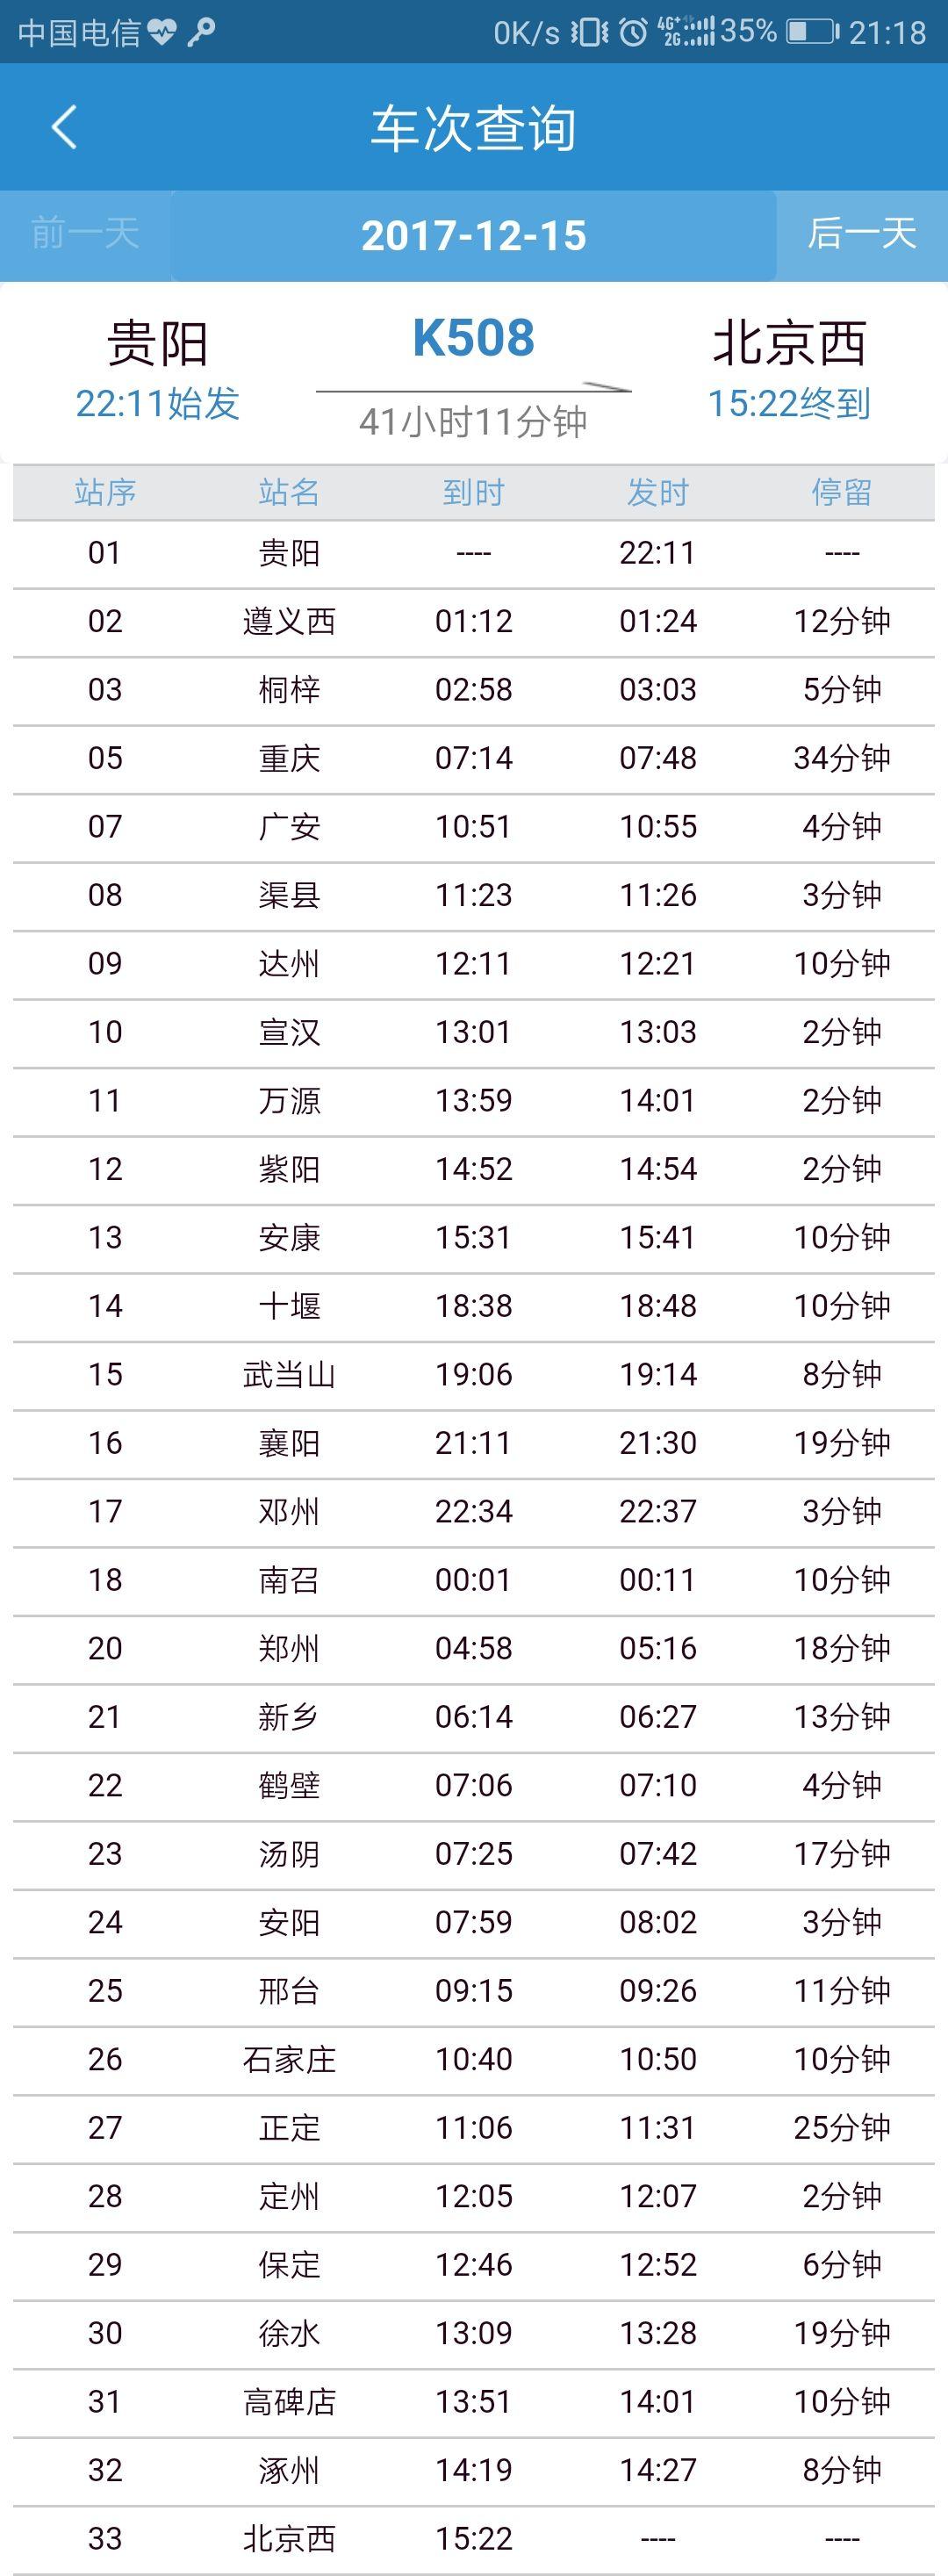 中国的铁路运行时刻表和路线是怎么优化的